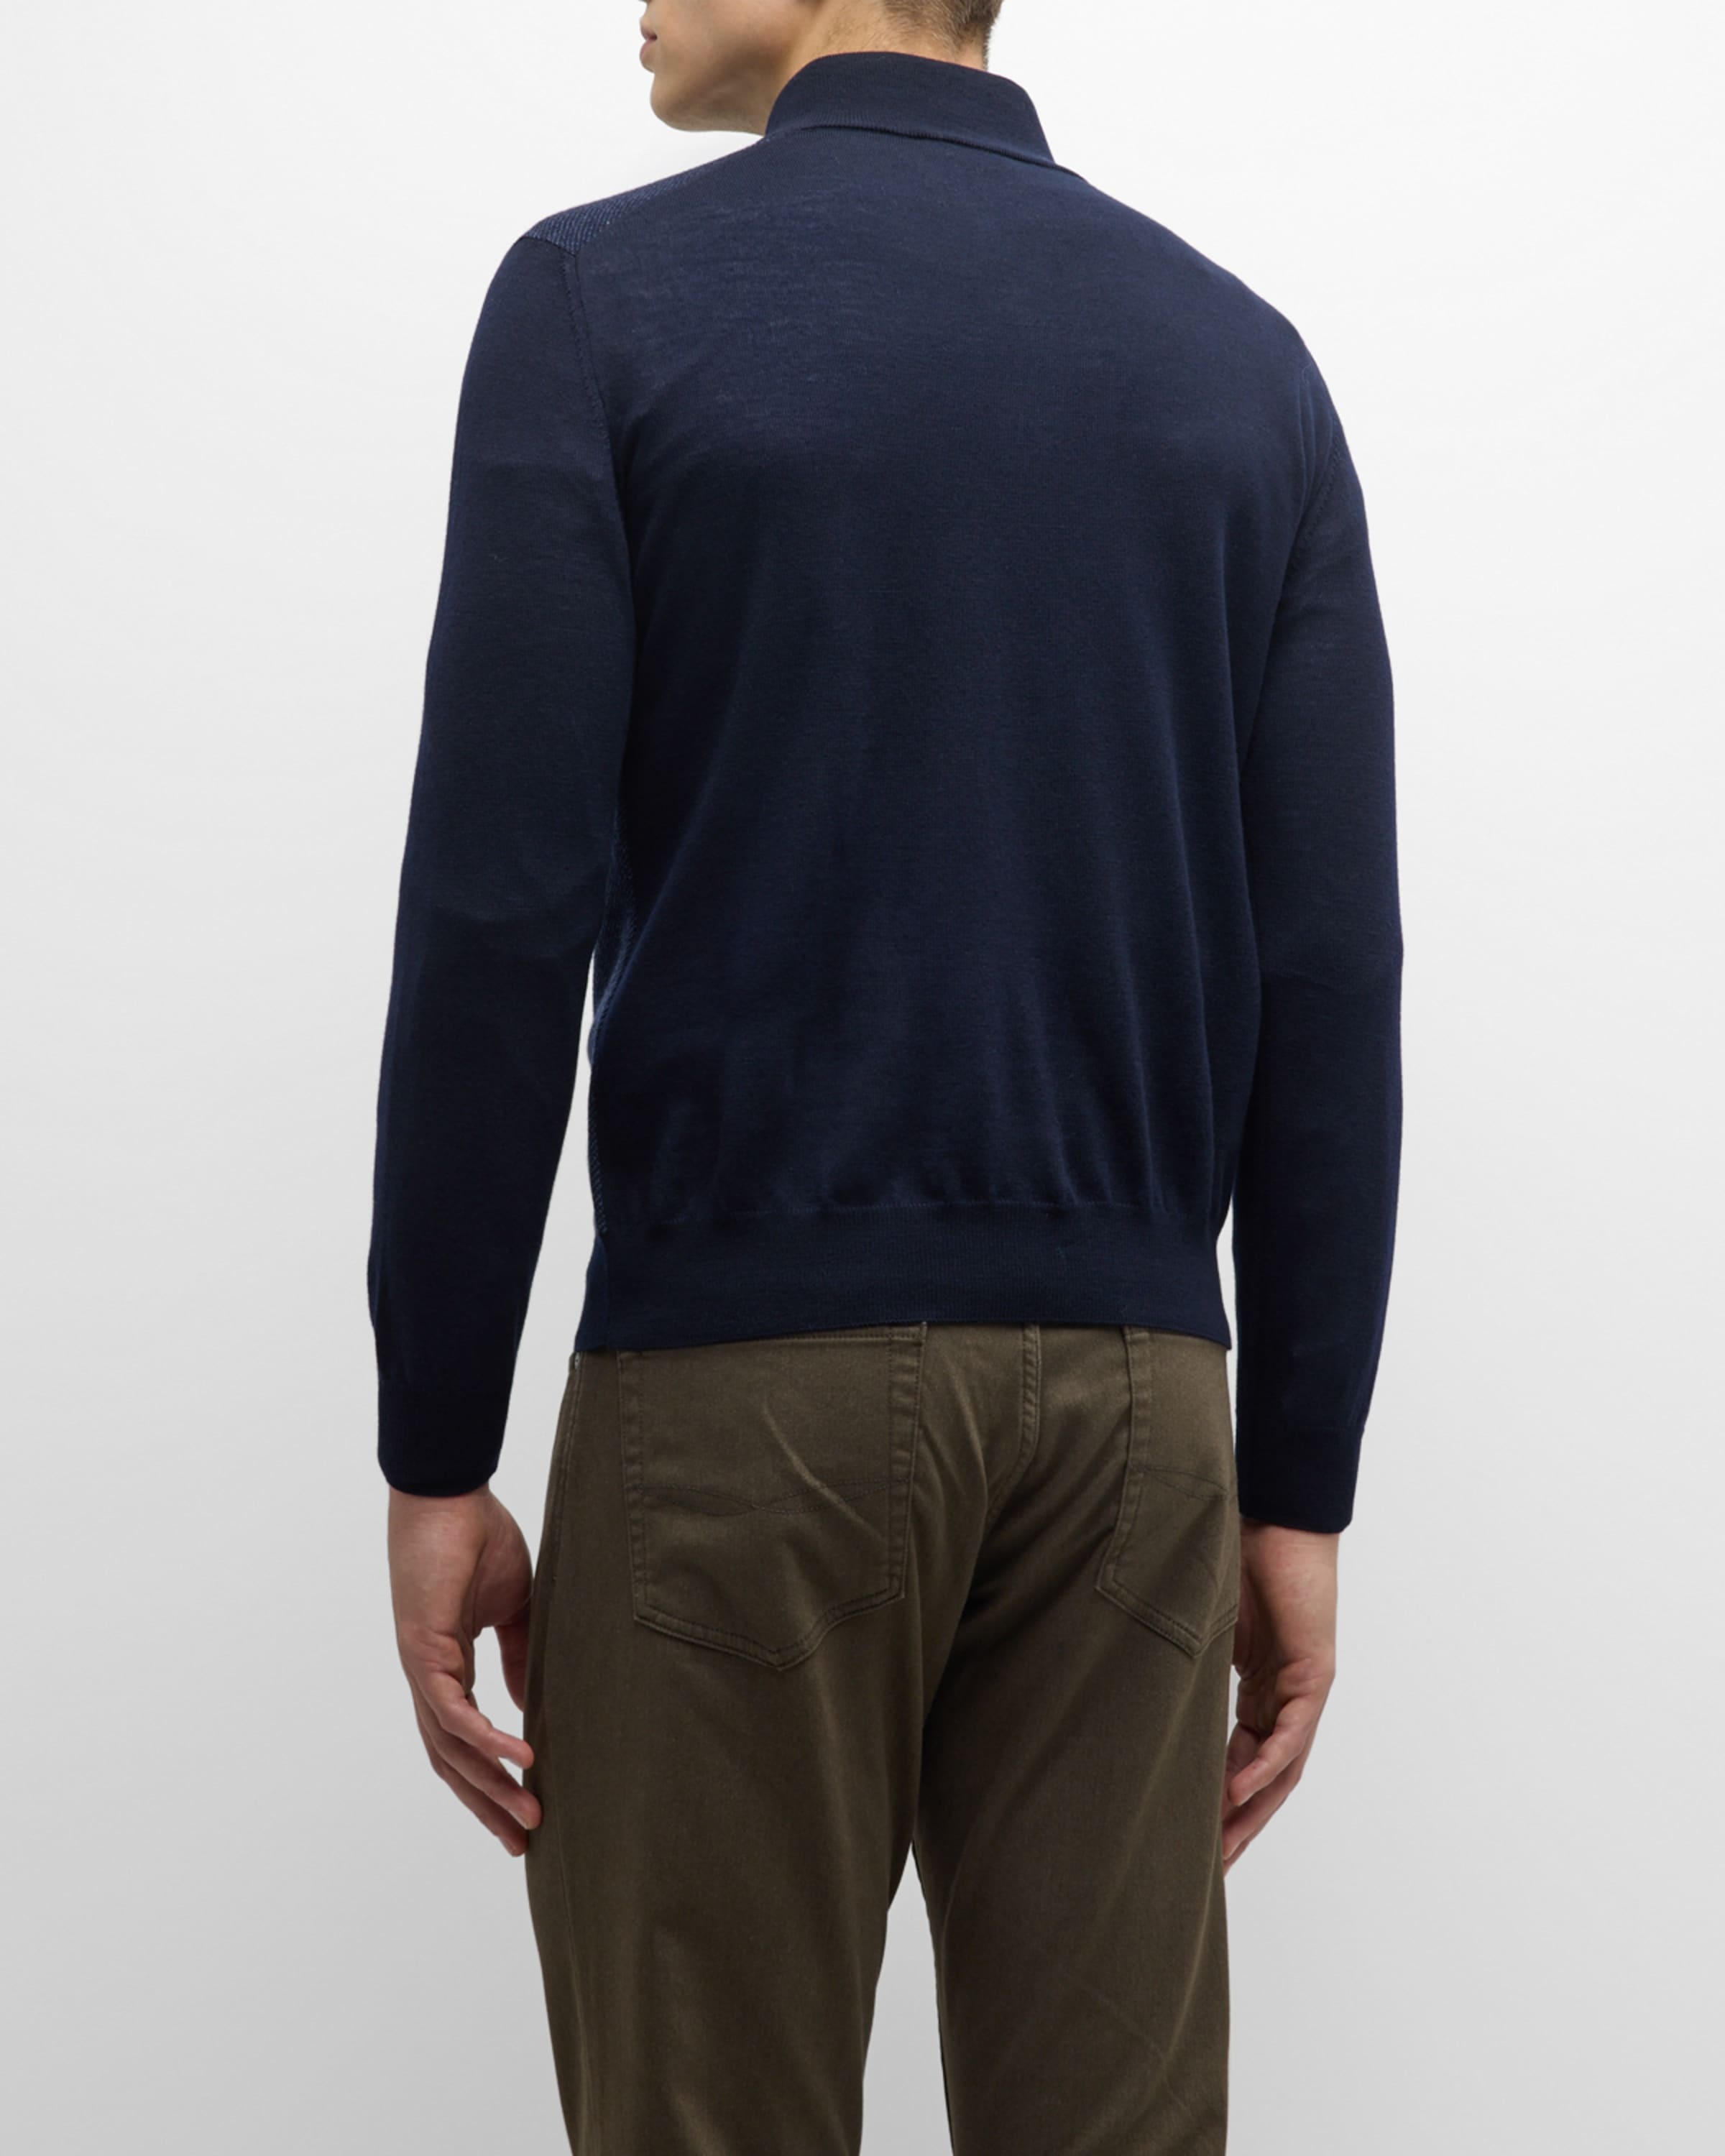 Men's Wool Quarter-Zip Sweater - 4